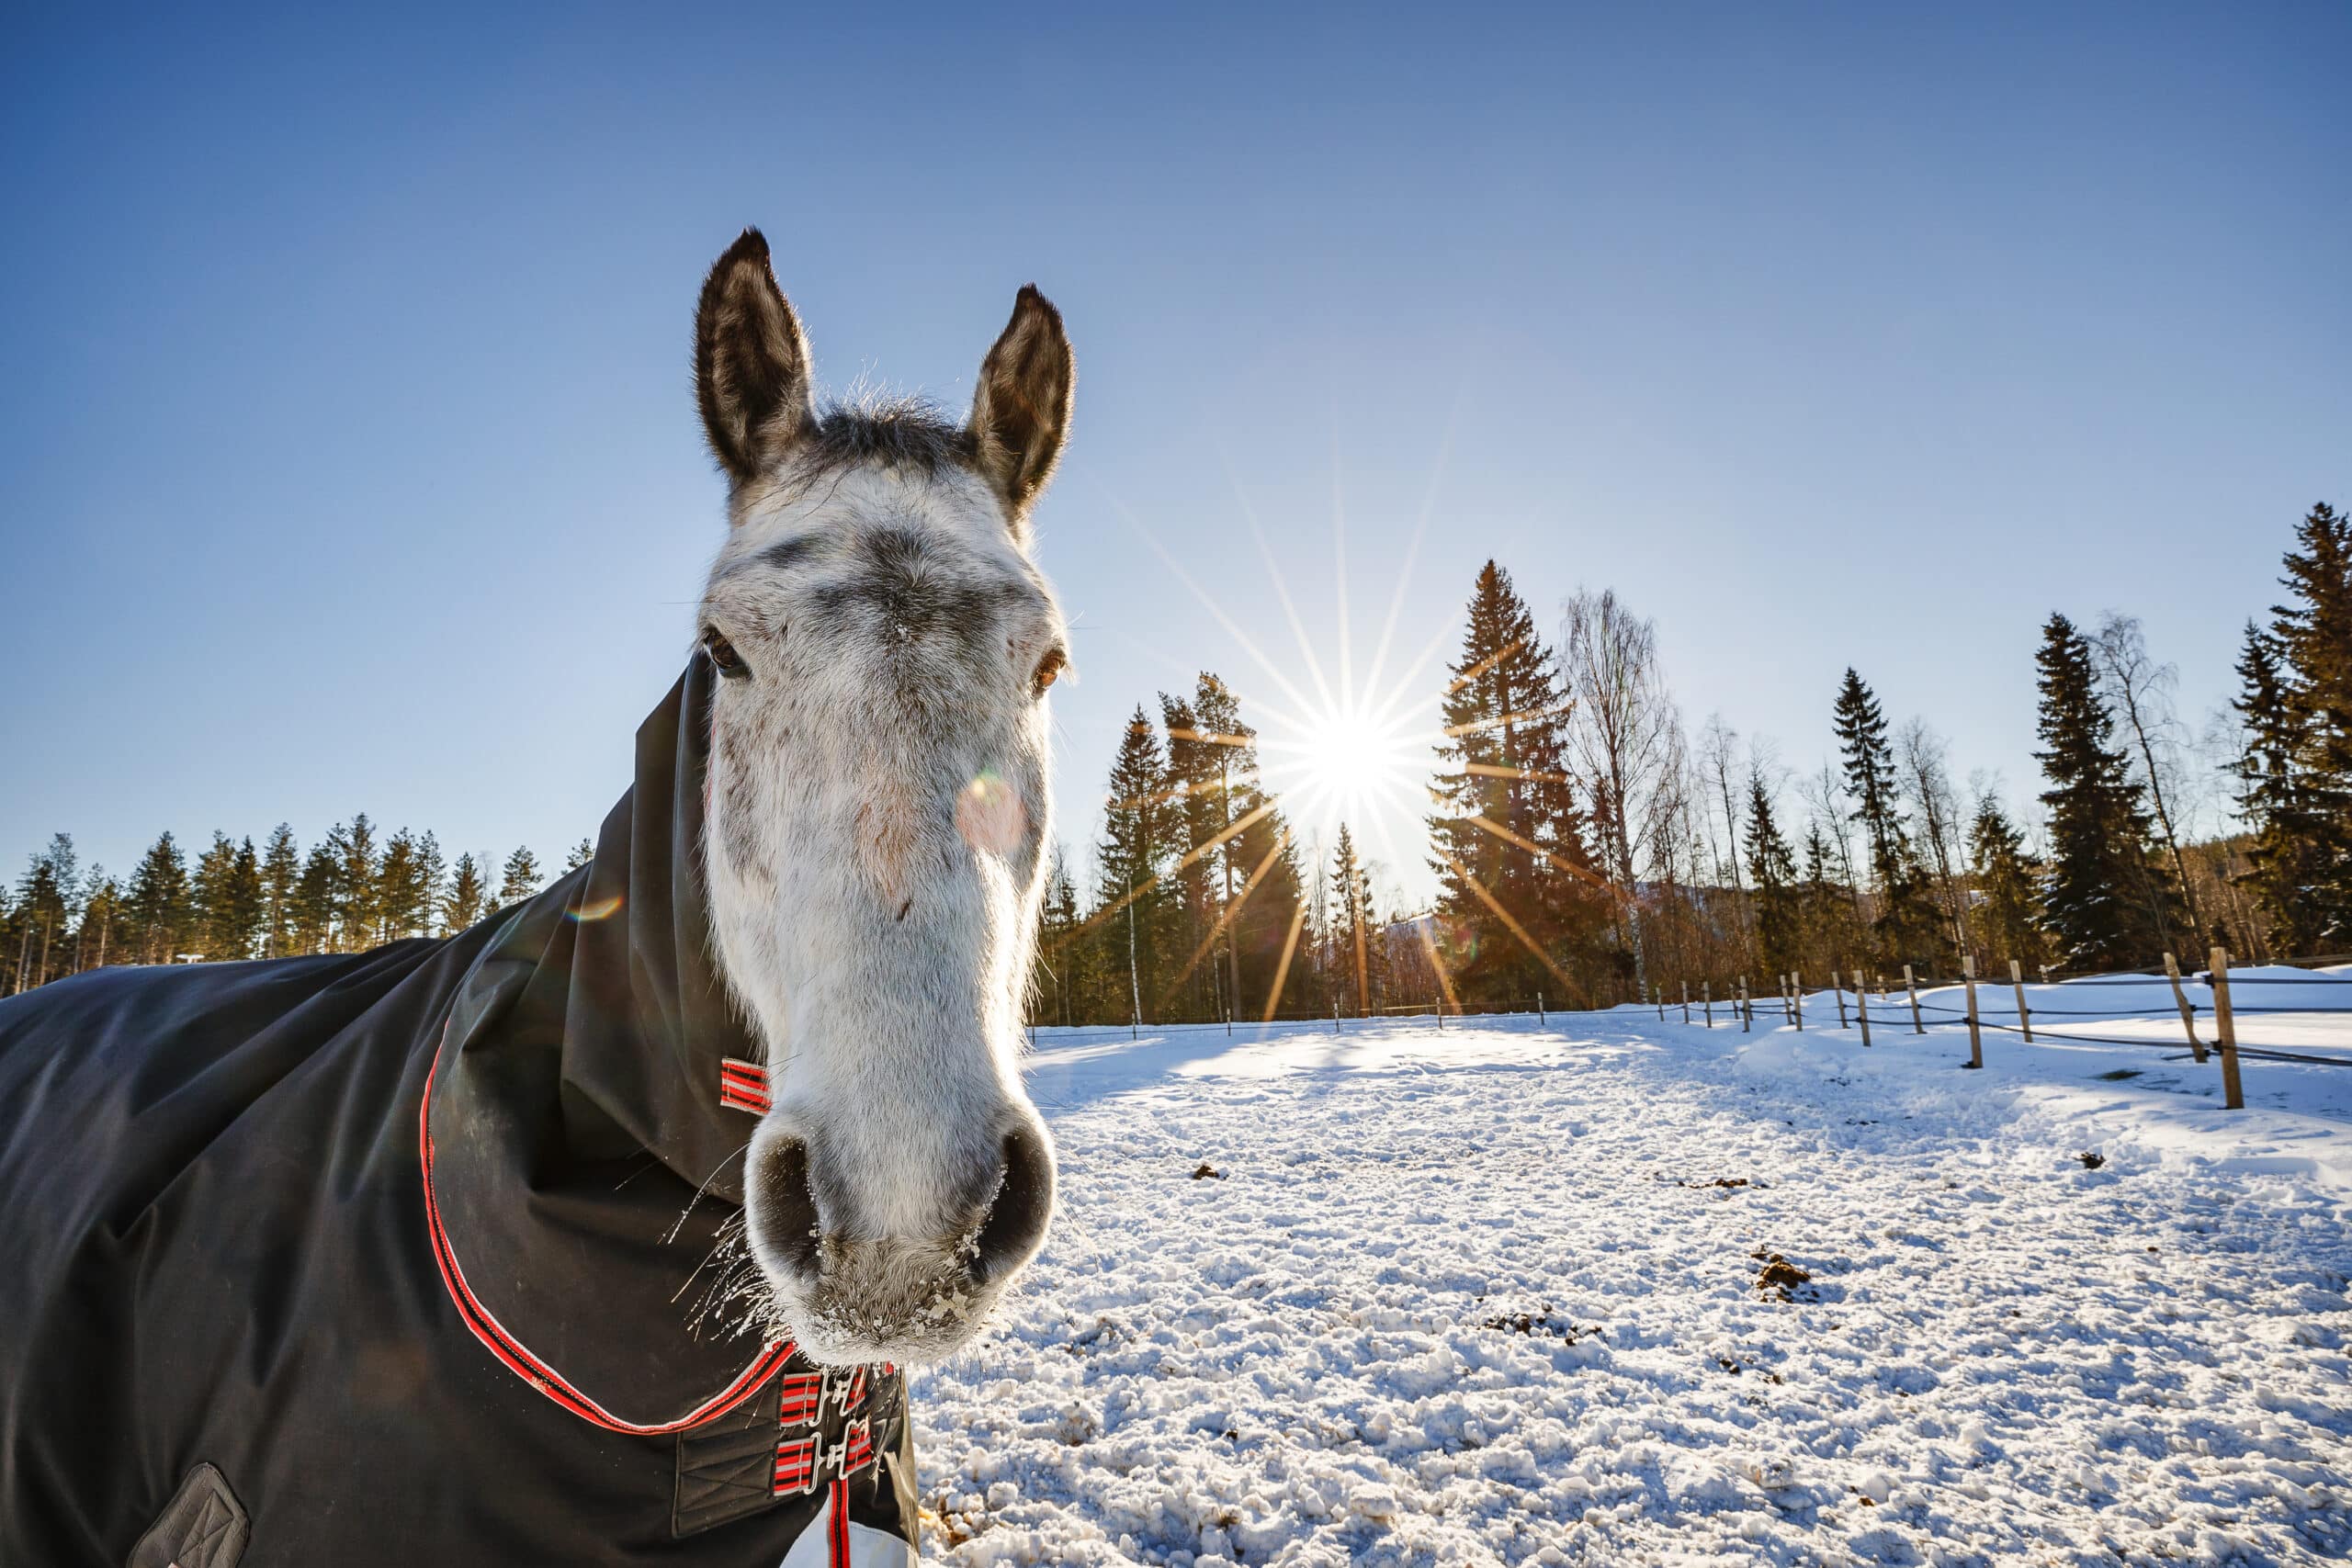 häst i snö